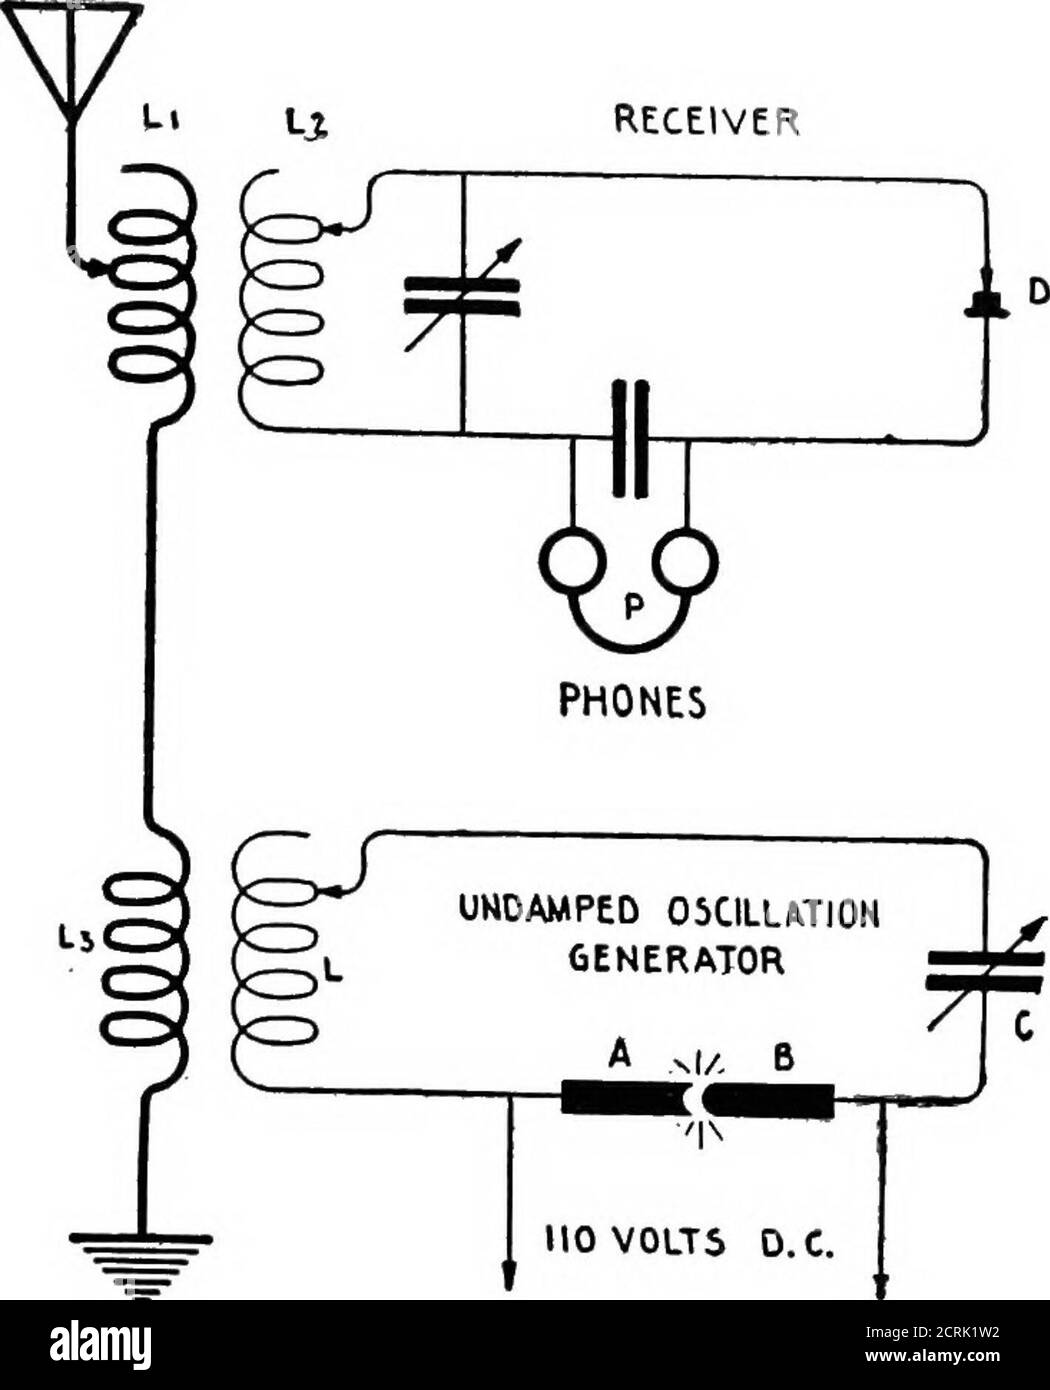 Praktische drahtlose Telegrafie; ein komplettes Lehrbuch für Studenten der  Funkkommunikation . Die Funktionsweise des Heterodyn*-Receivers basiert auf  der Wechselwirkung von Wechselströmen zweier Frequenzen in einem Teil der  Empfängerkreise. Wenn ...